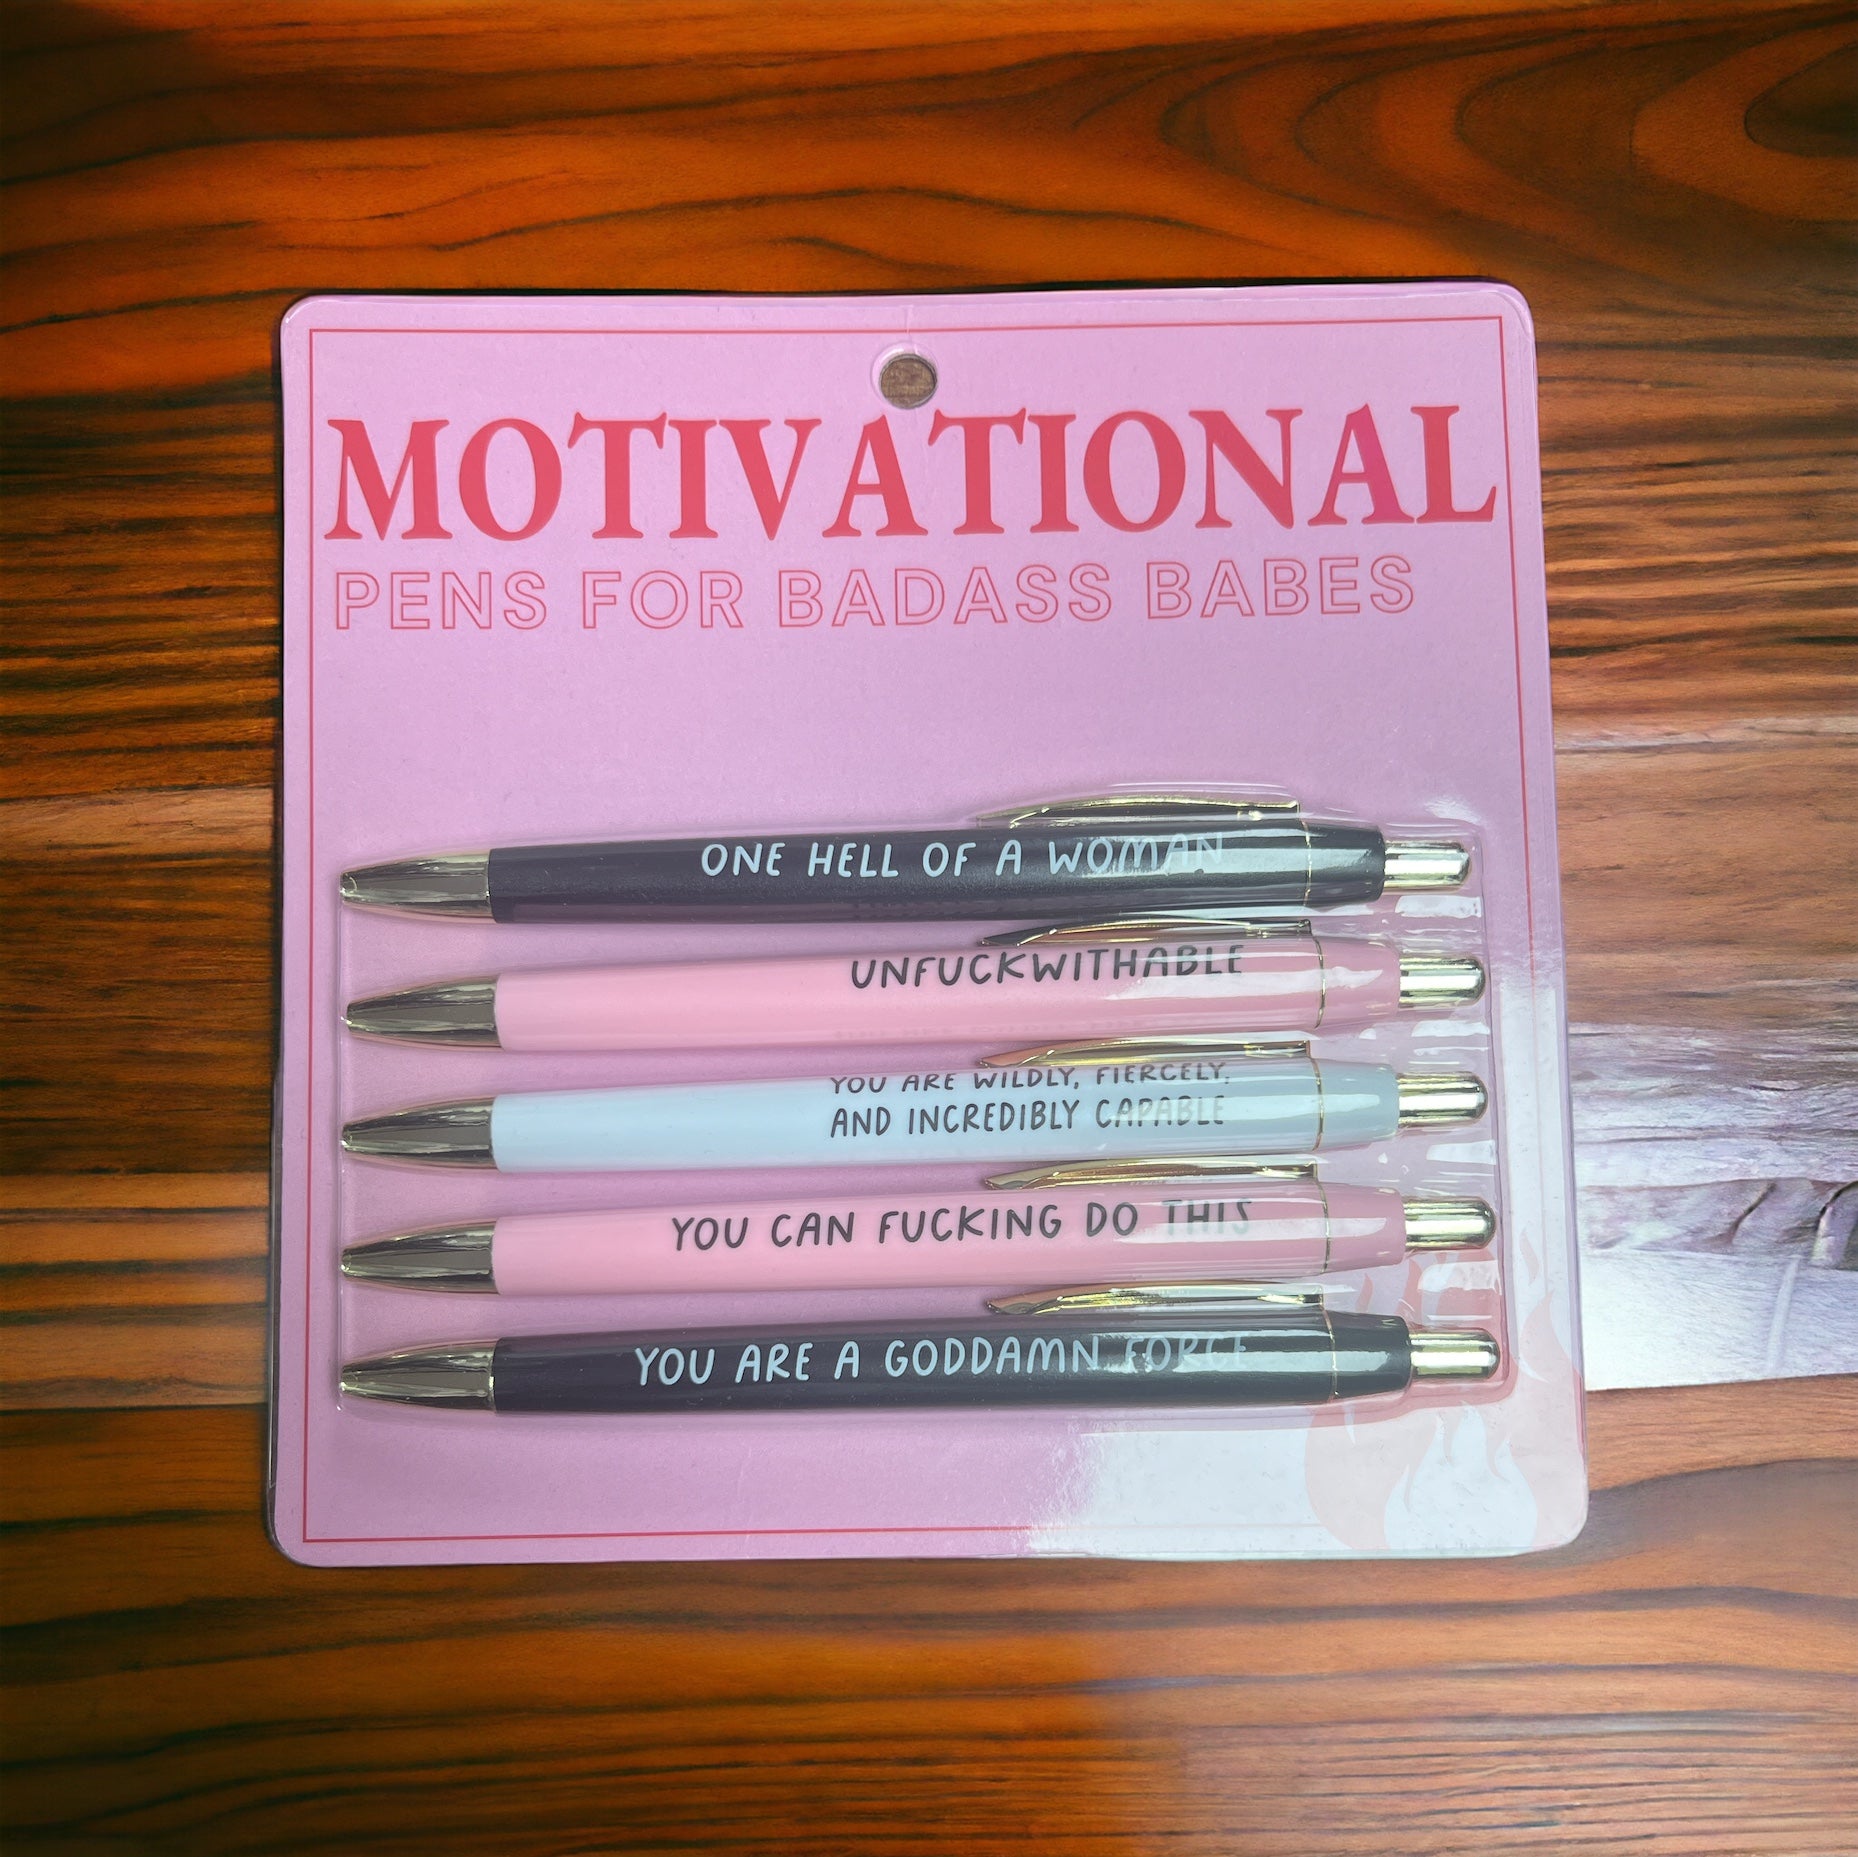 FUN CLUB - Motivational Pens for Badass Babes